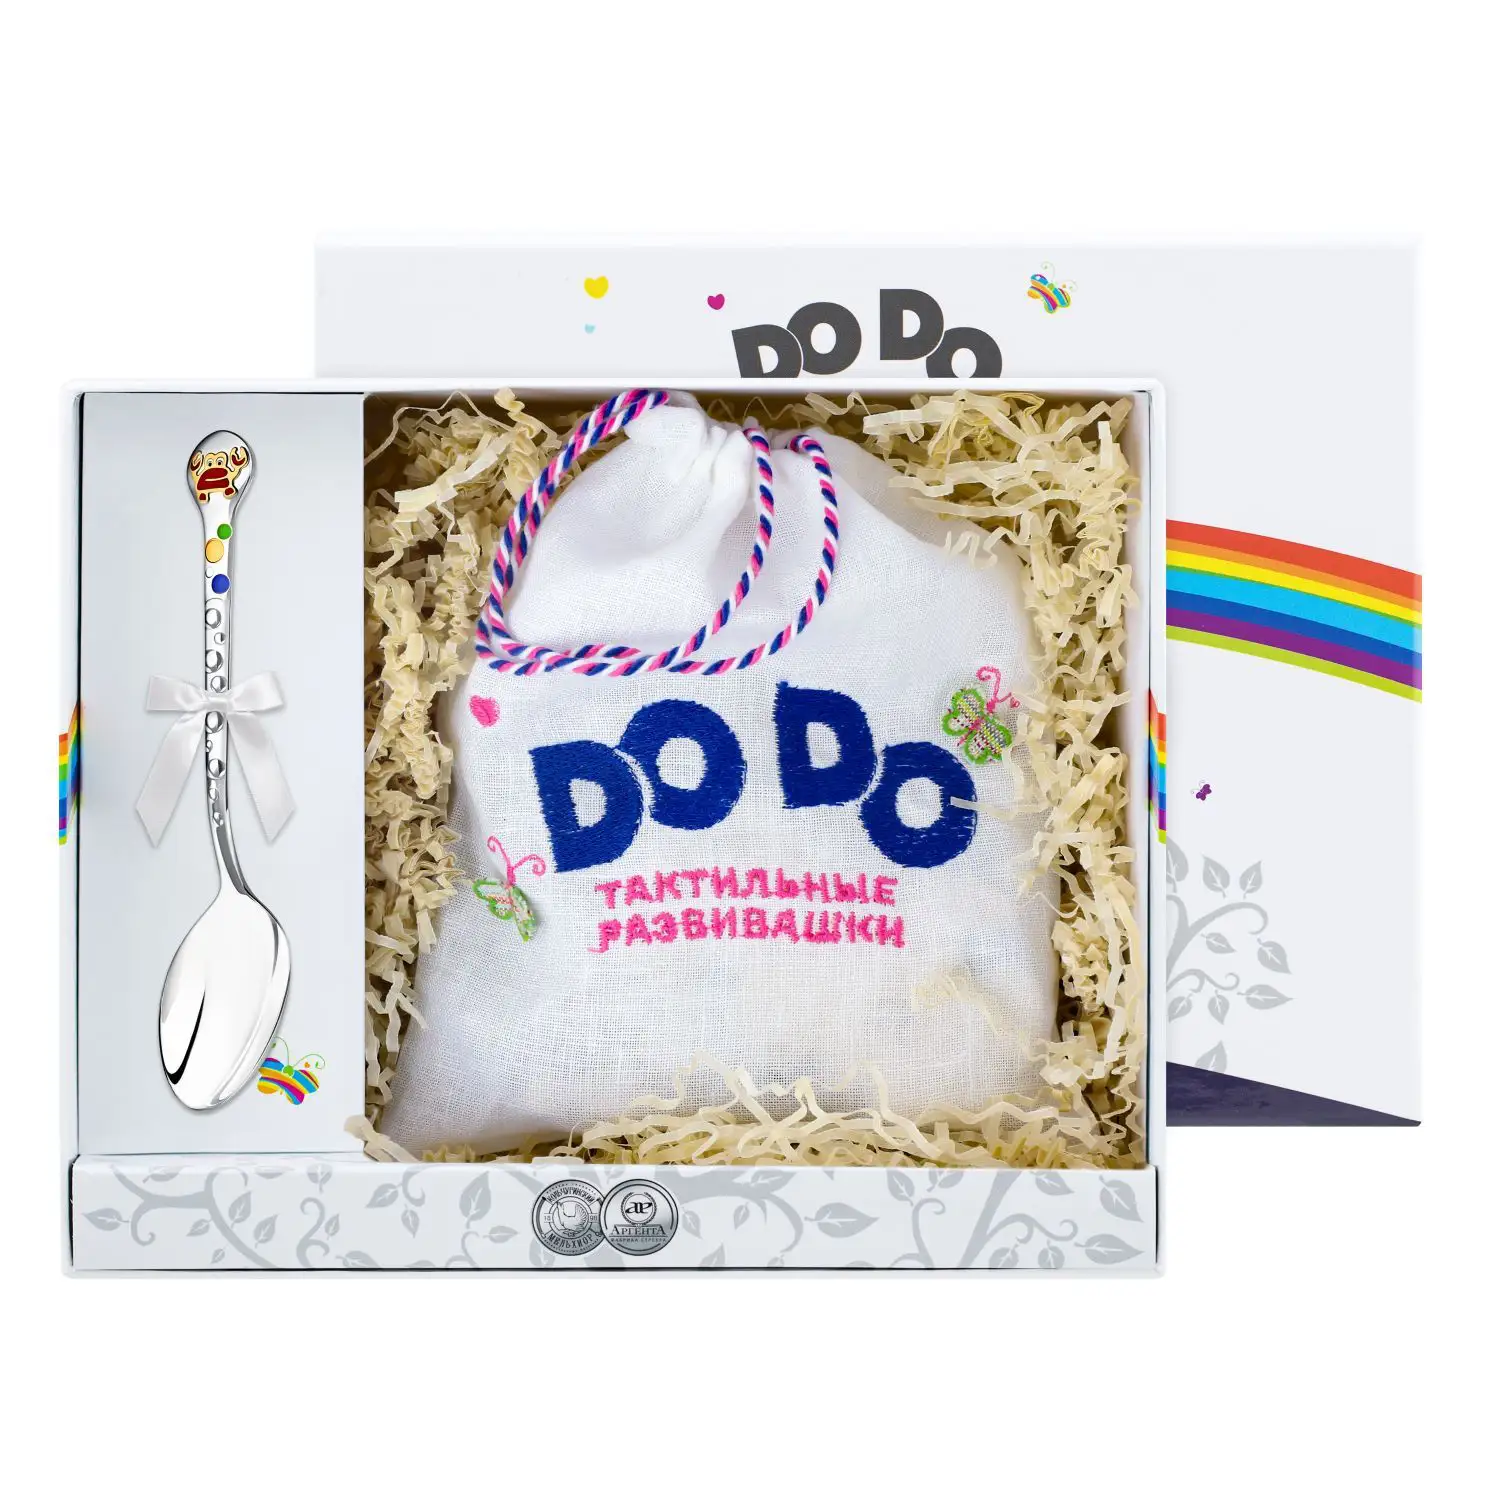 Набор детский DODO Крабик: пазл и ложка с позолотой и эмалью (Серебро 925) набор детский dodo собачка ложка и пазл с позолотой и эмалью серебро 925